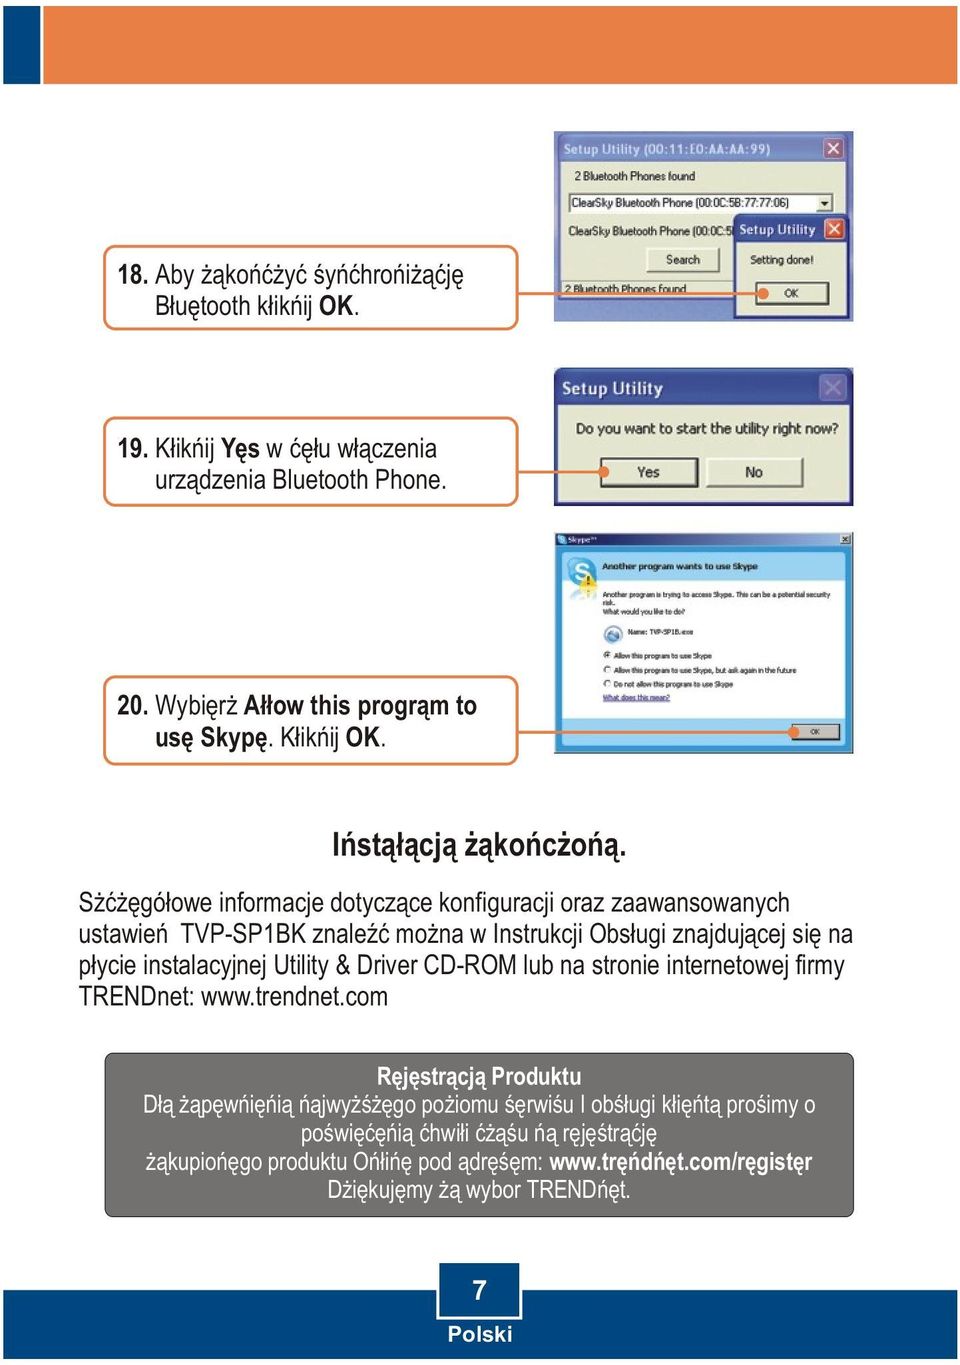 Szczegóùowe informacje dotyczàce konfiguracji oraz zaawansowanych ustawieñ TVP-SP1BK znaleêã moýna w Instrukcji Obsùugi znajdujàcej siæ na pùycie instalacyjnej Utility